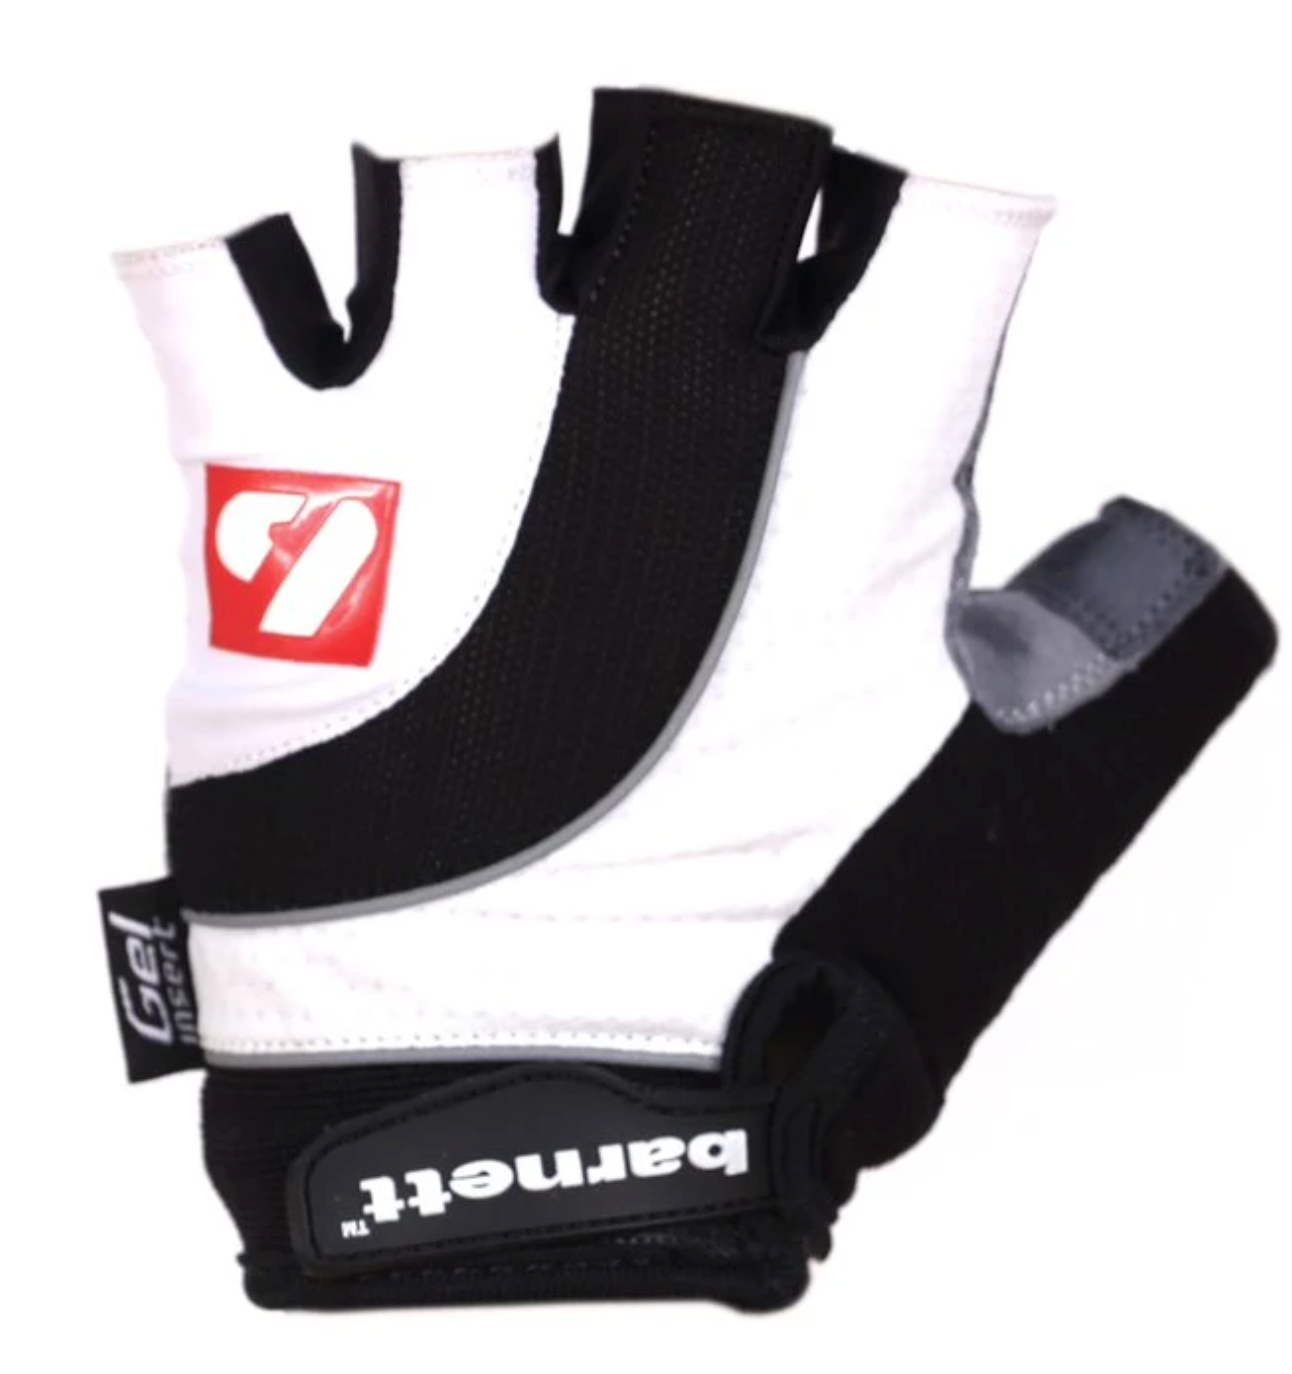 BG-04 fingerless bike gloves for competitions